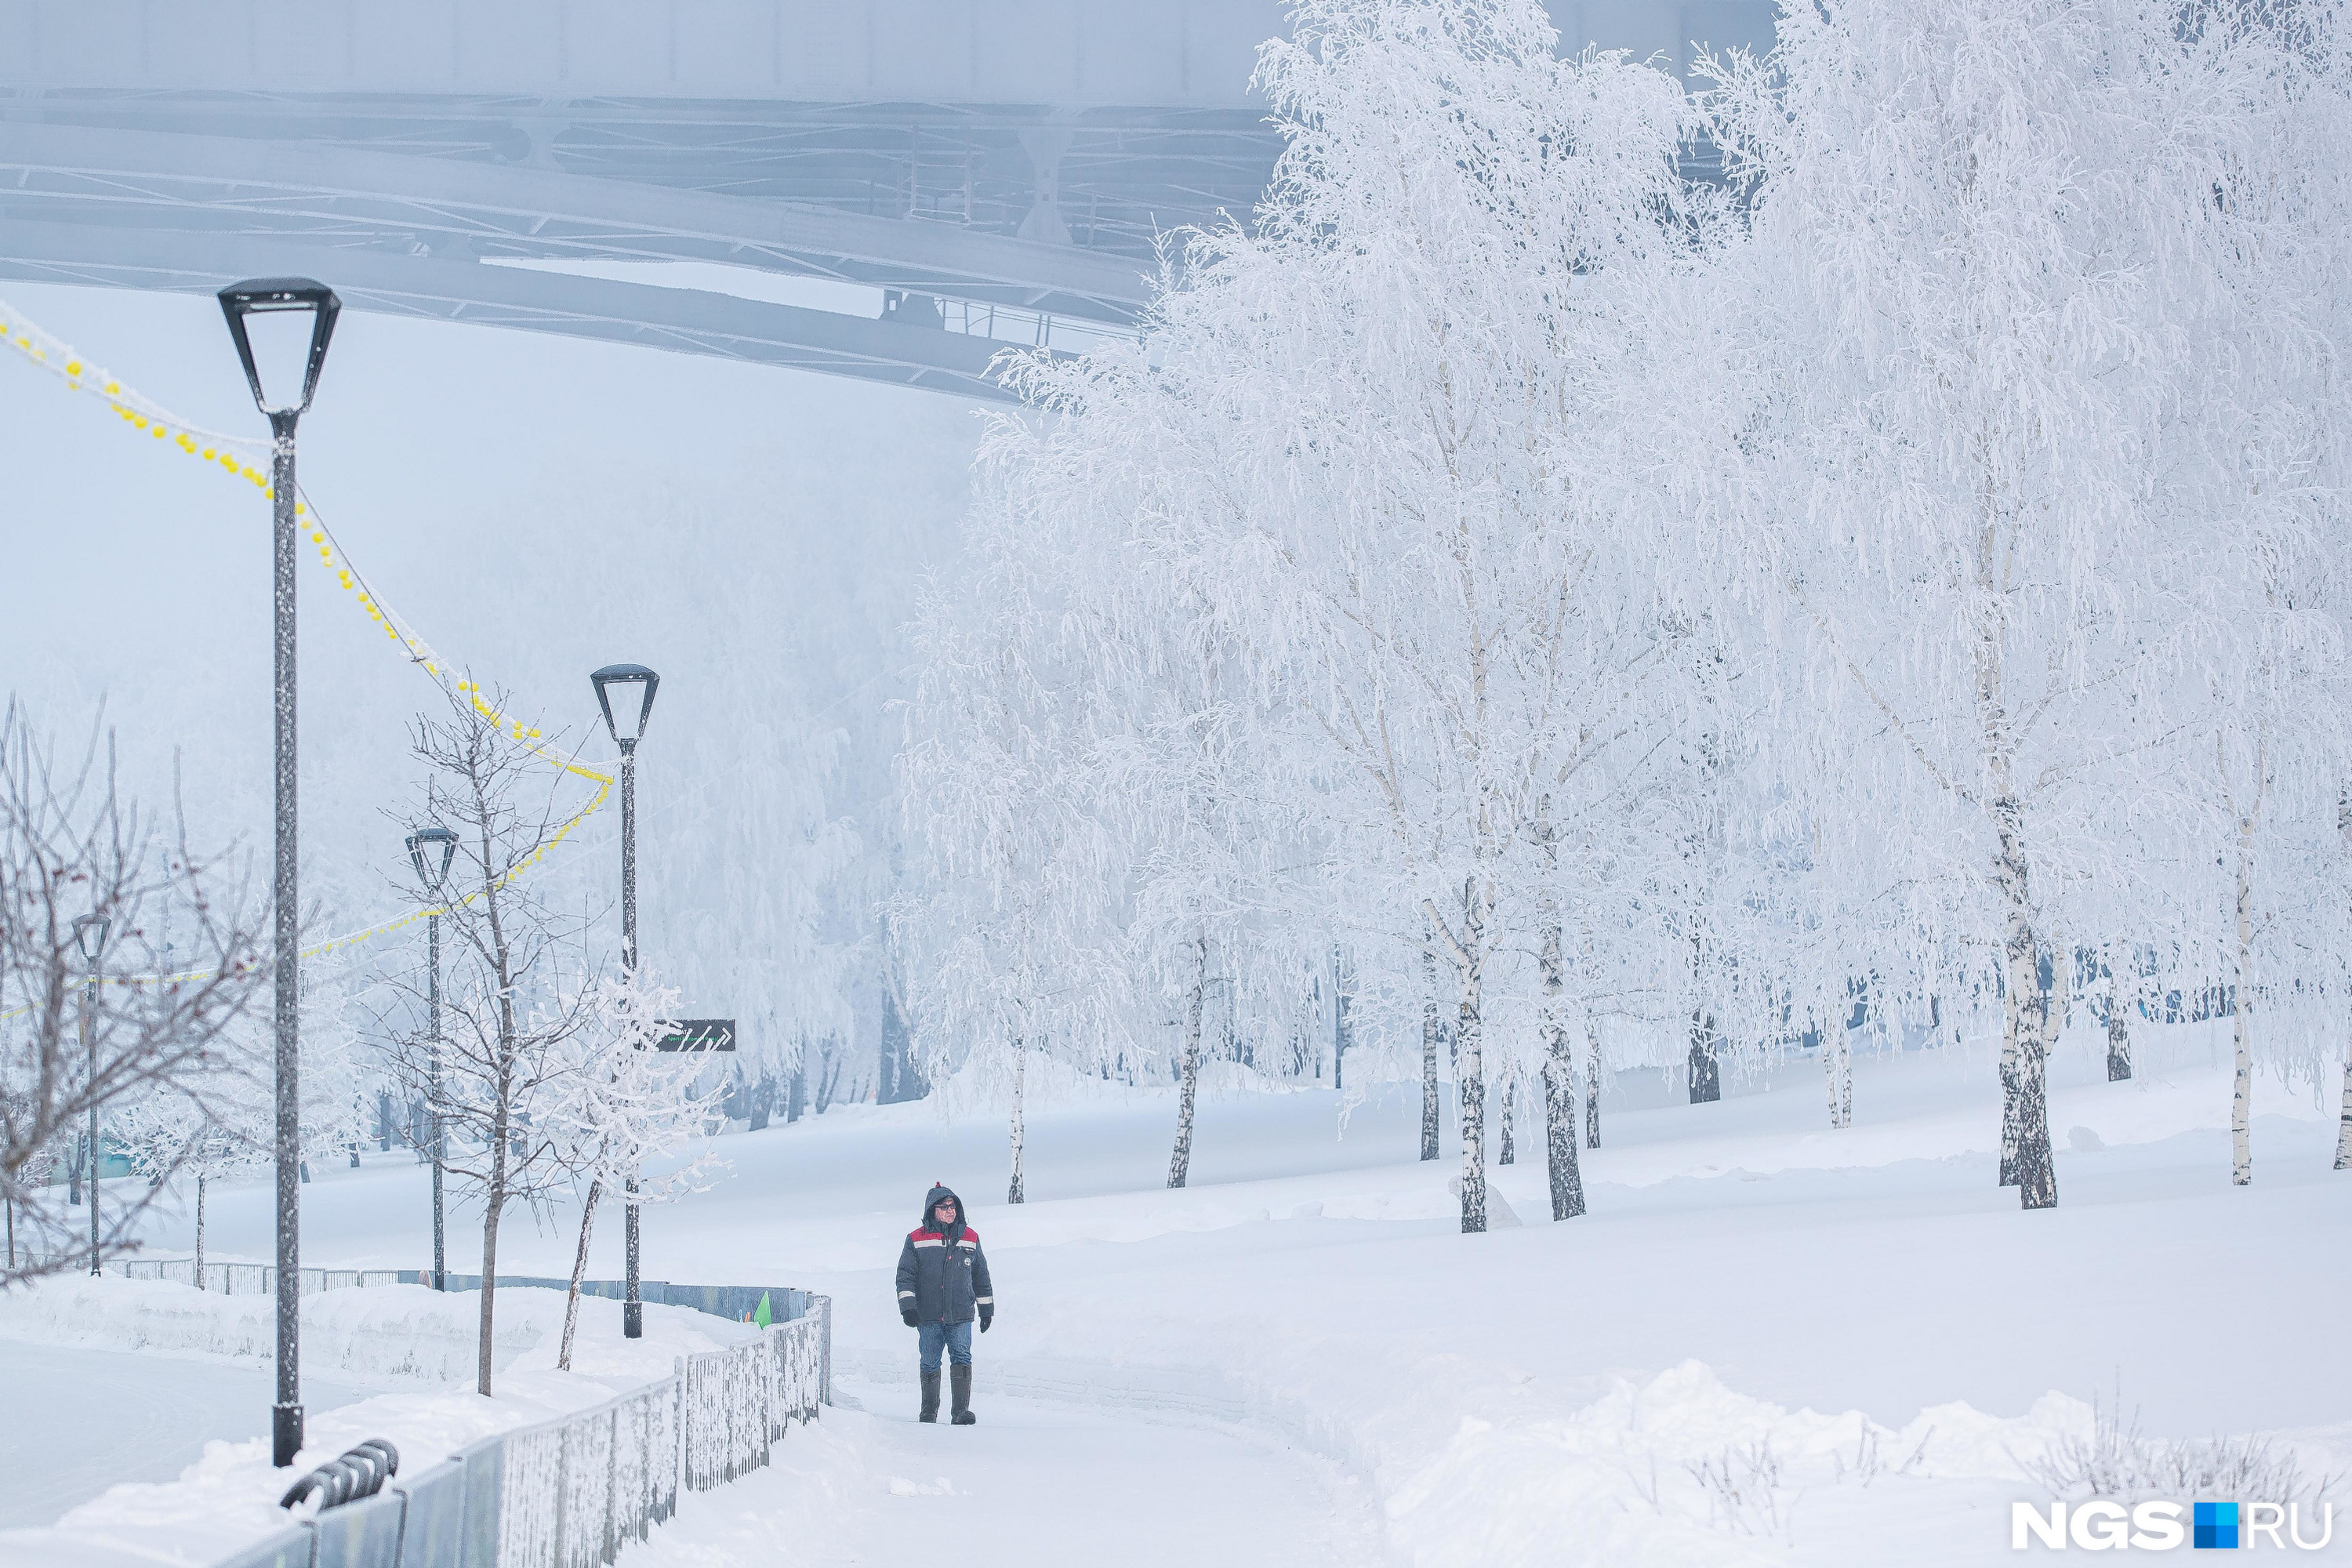 Похолодает до -33: синоптики озвучили прогноз погоды на начало недели в Кузбассе